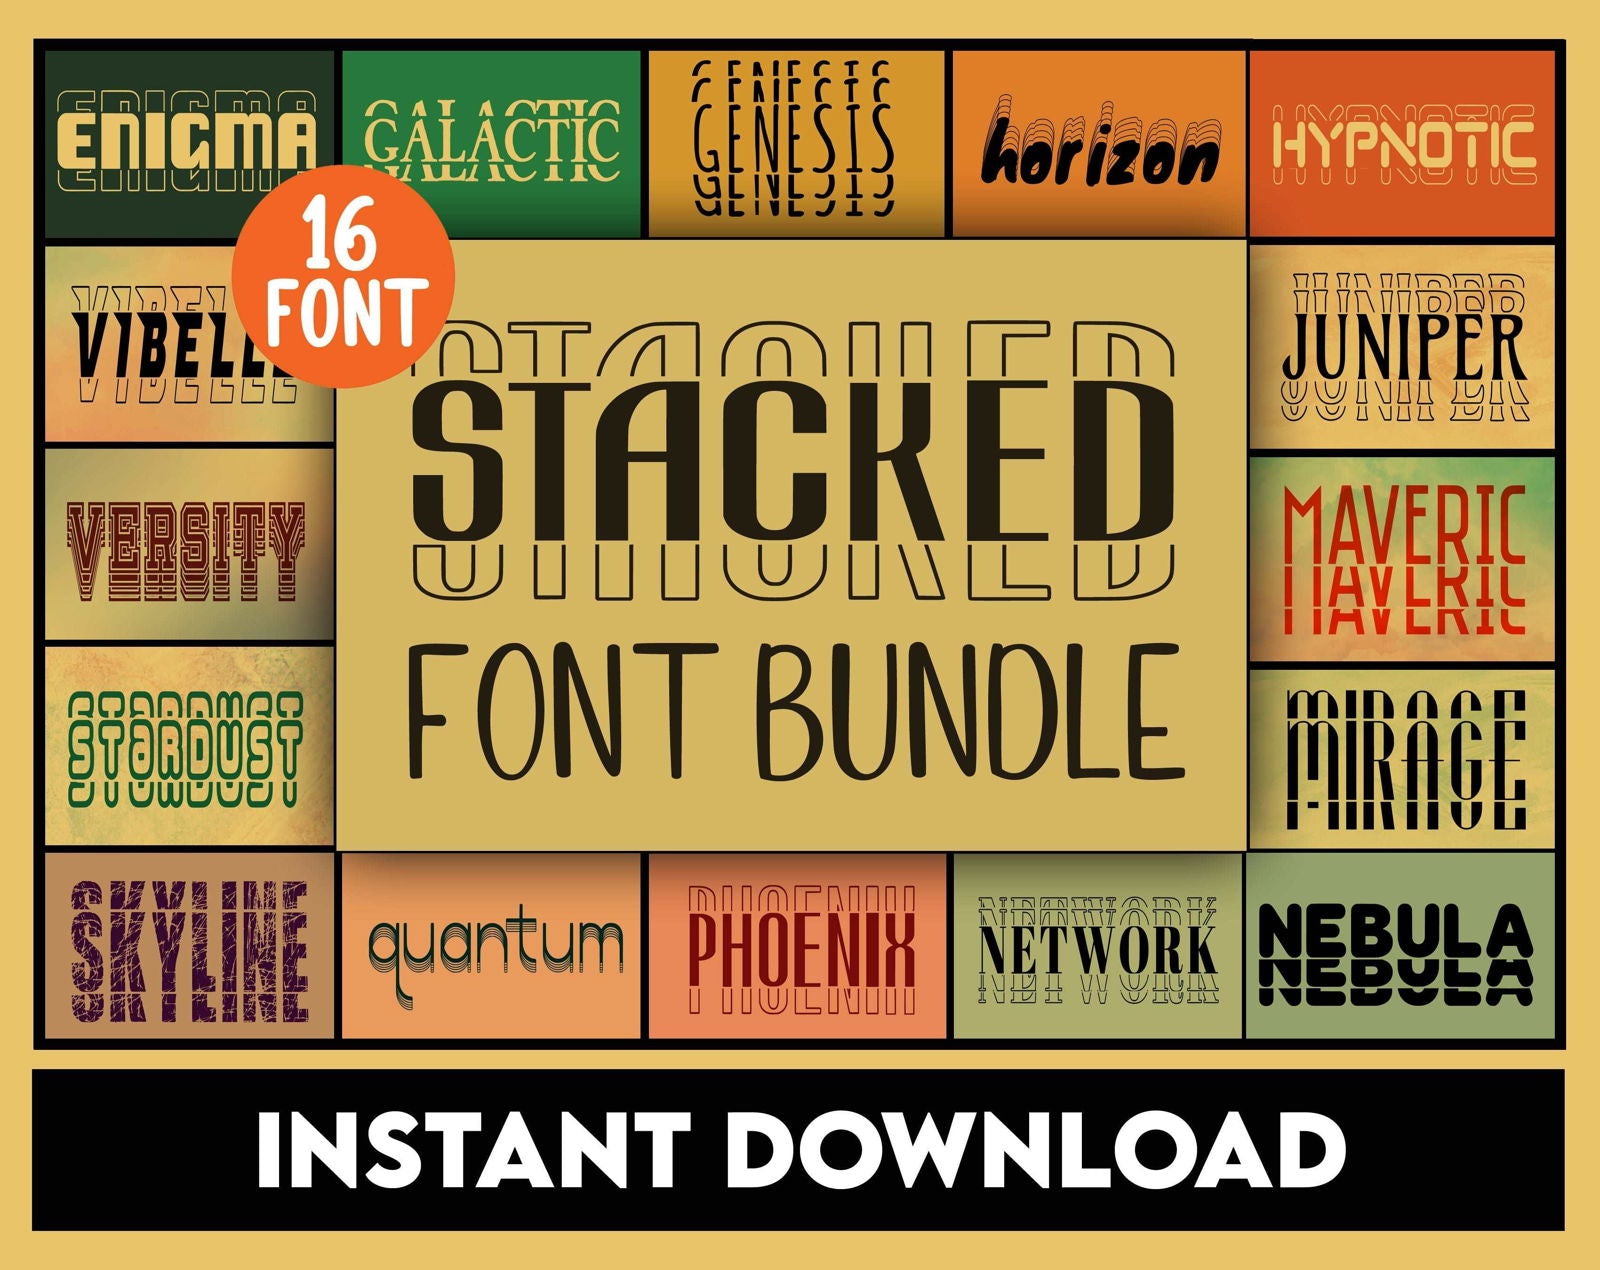 Stacked Font Bundle - Trustful Design